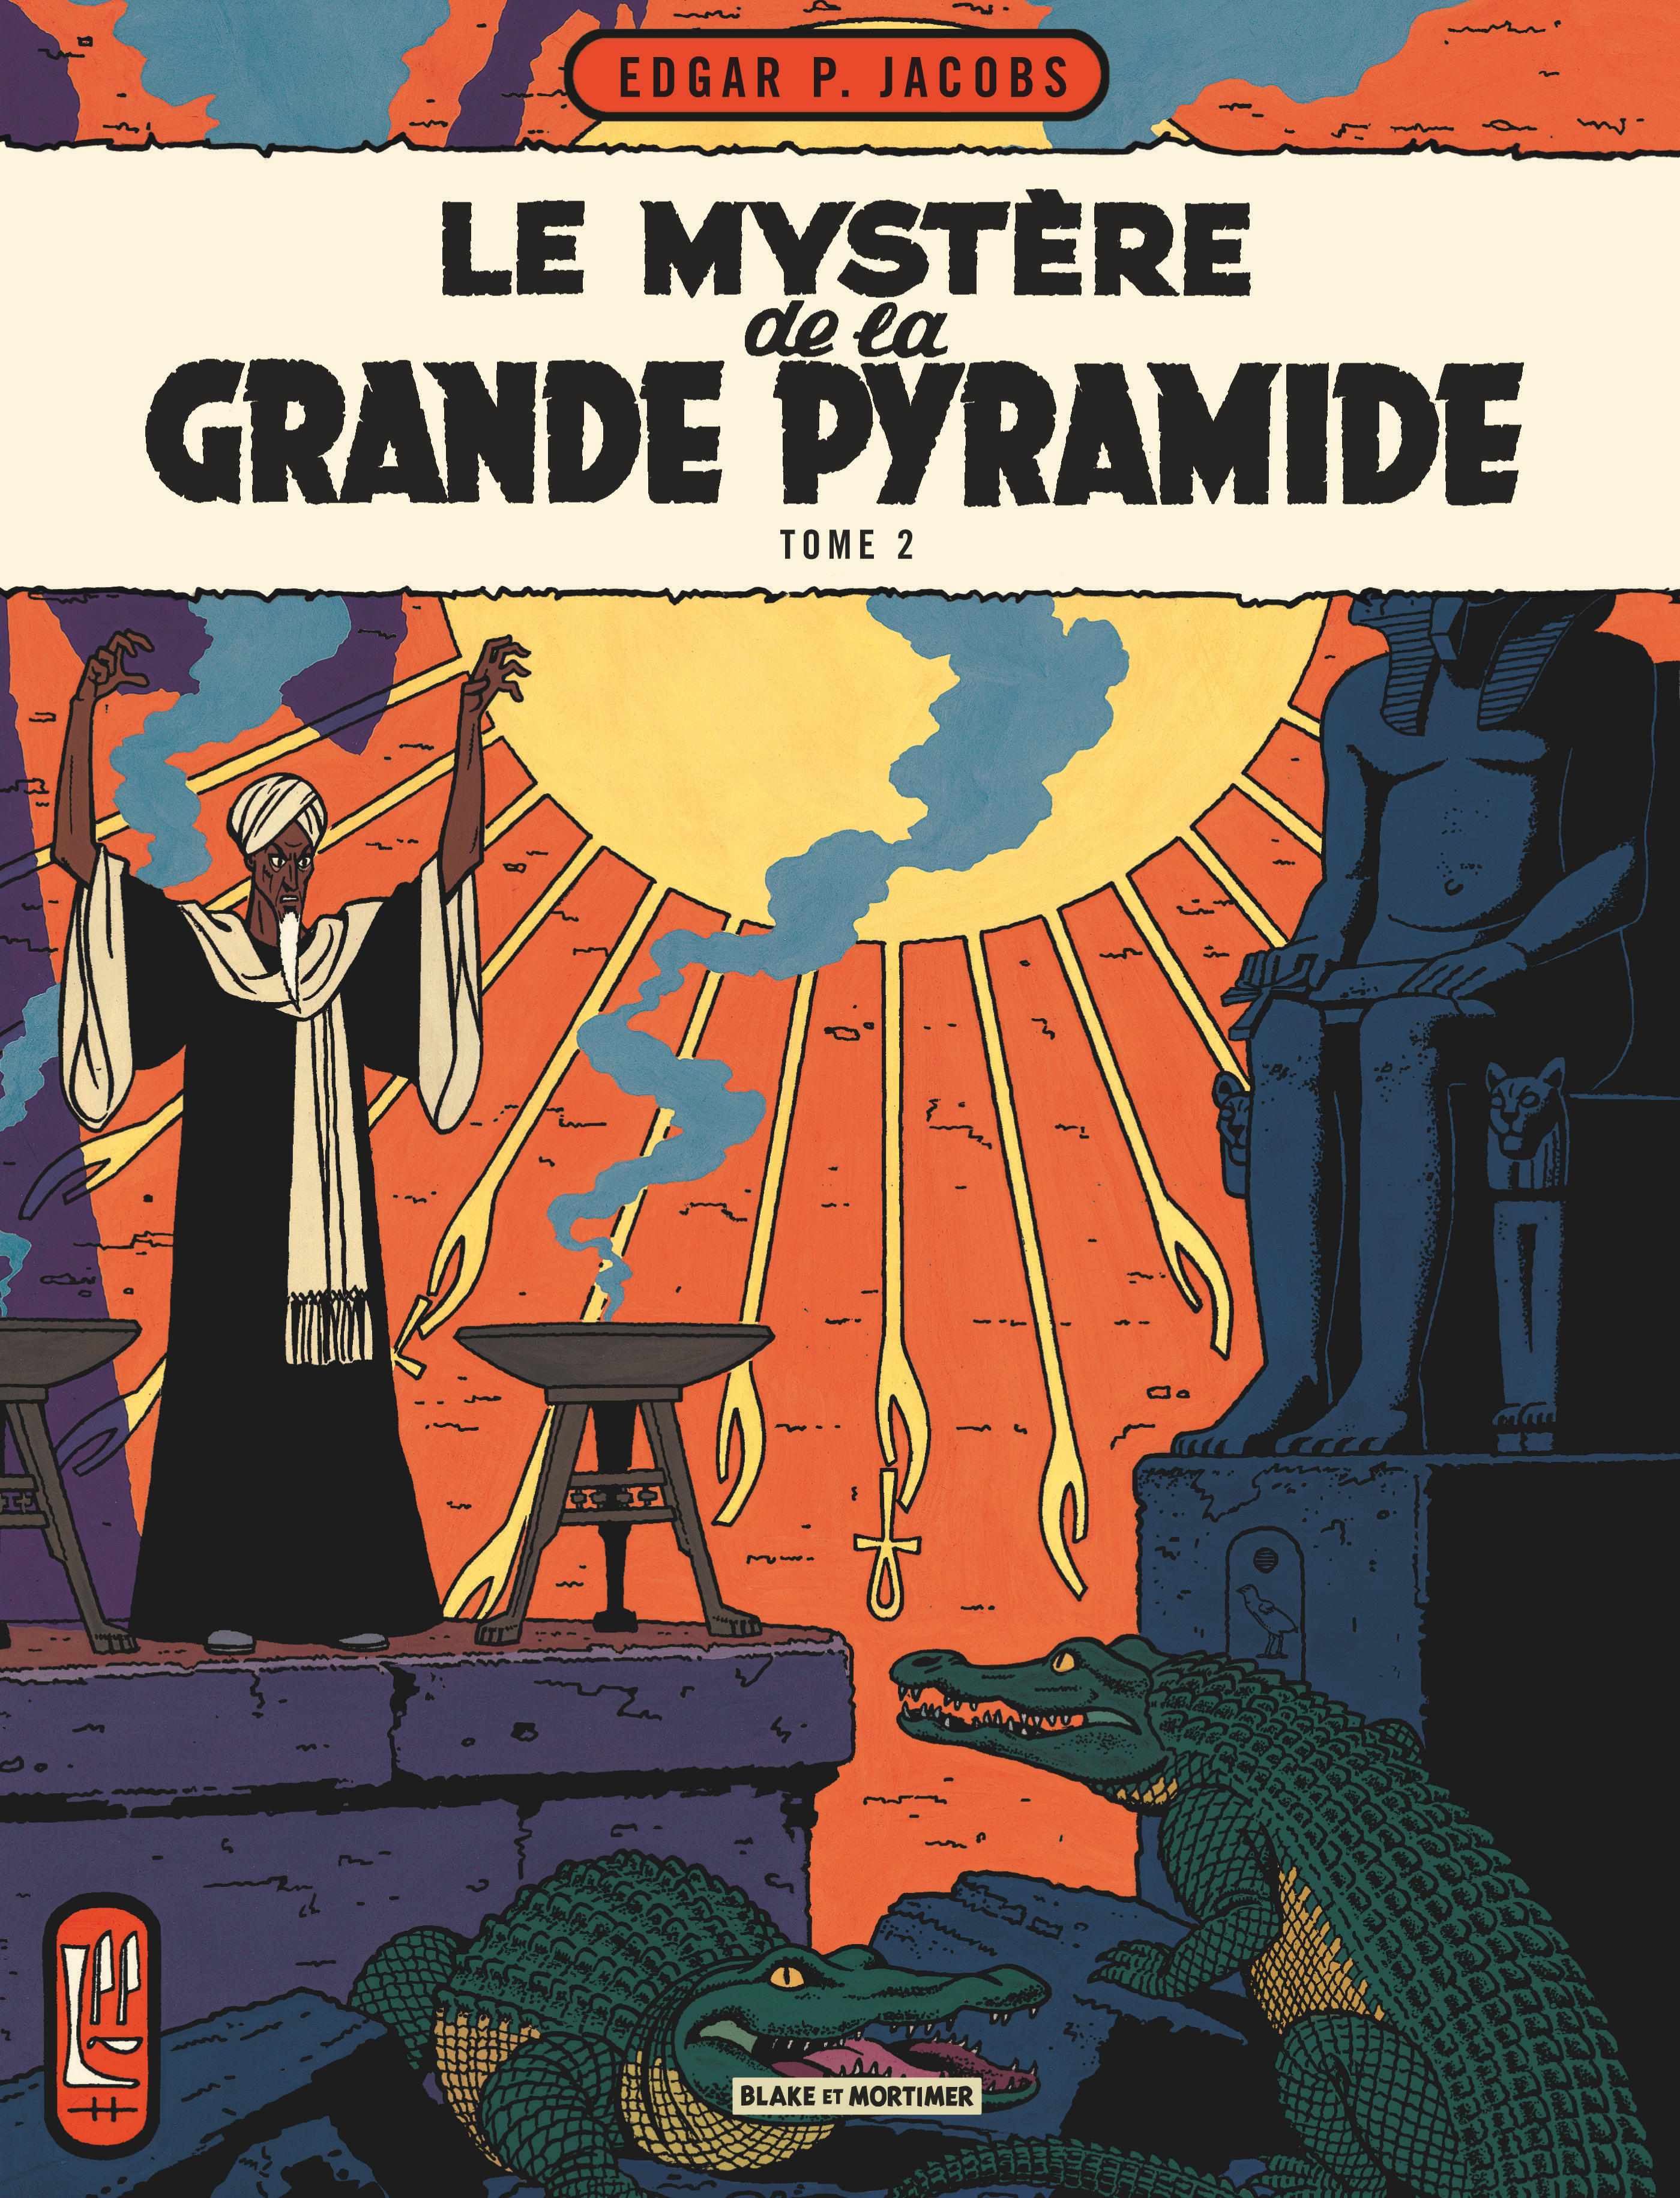 Blake & Mortimer – Tome 5 – Le Mystère de la Grande Pyramide - Tome 2 - couv